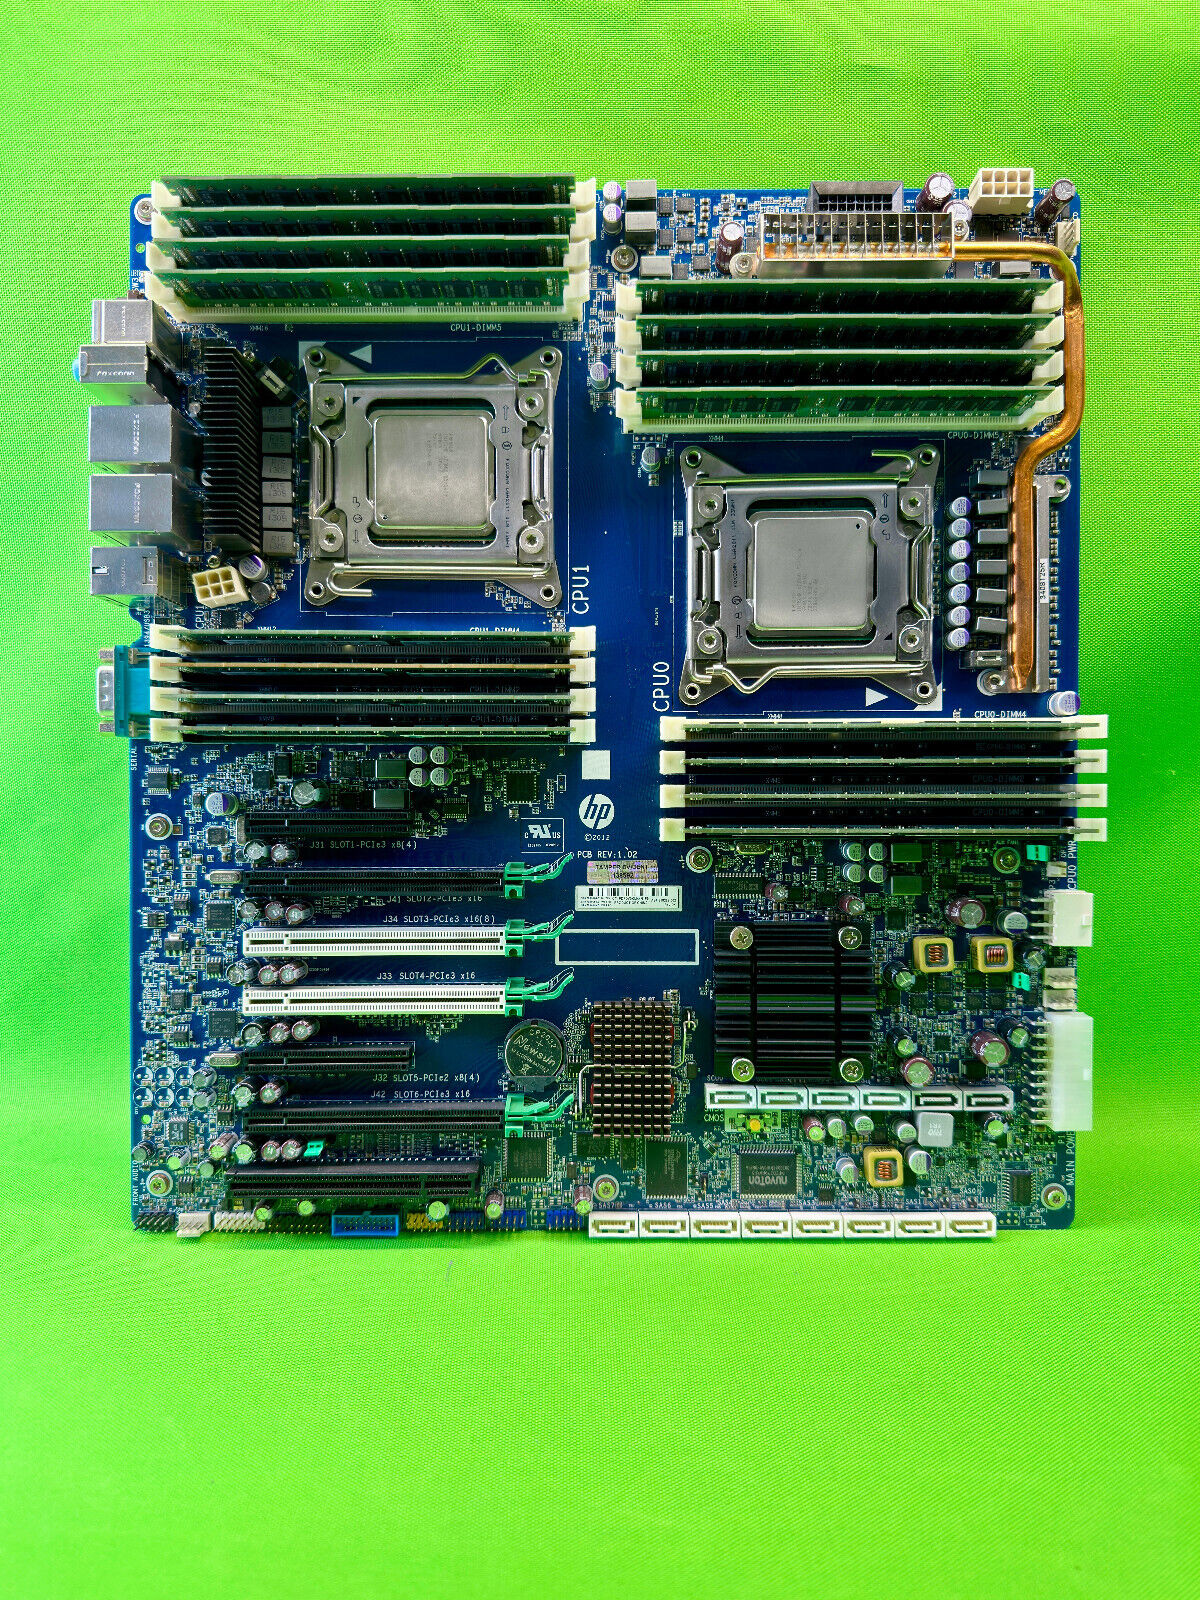 HP Z820 Workstation Motherboard, 2X Intel Xeon E5-2630, 128GB RAM (708464-001)